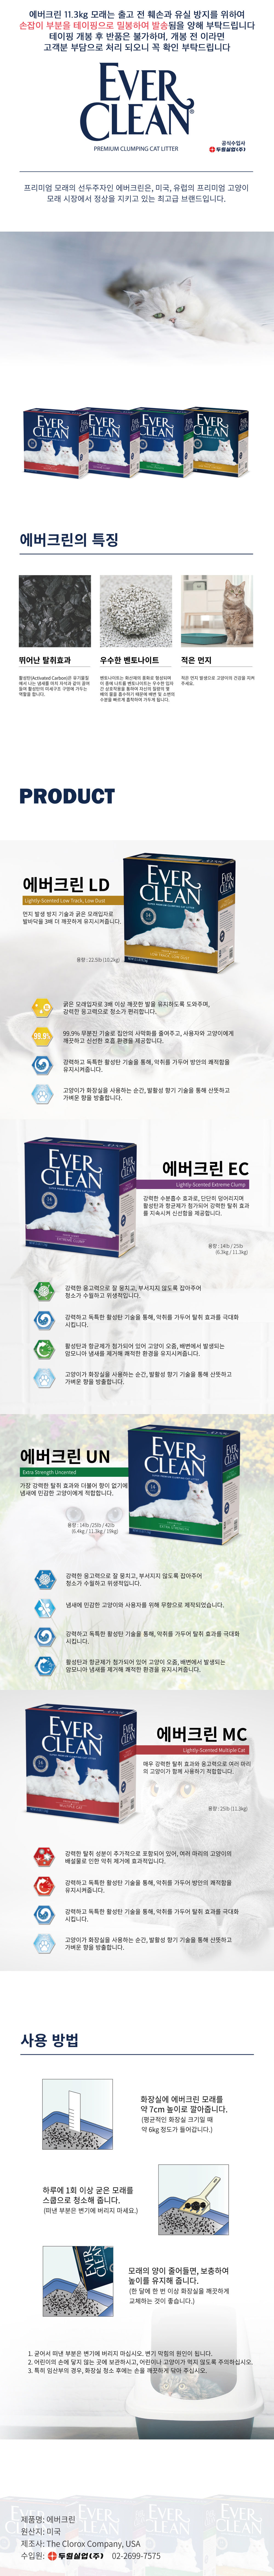 EVERCLEAN_EC.jpg